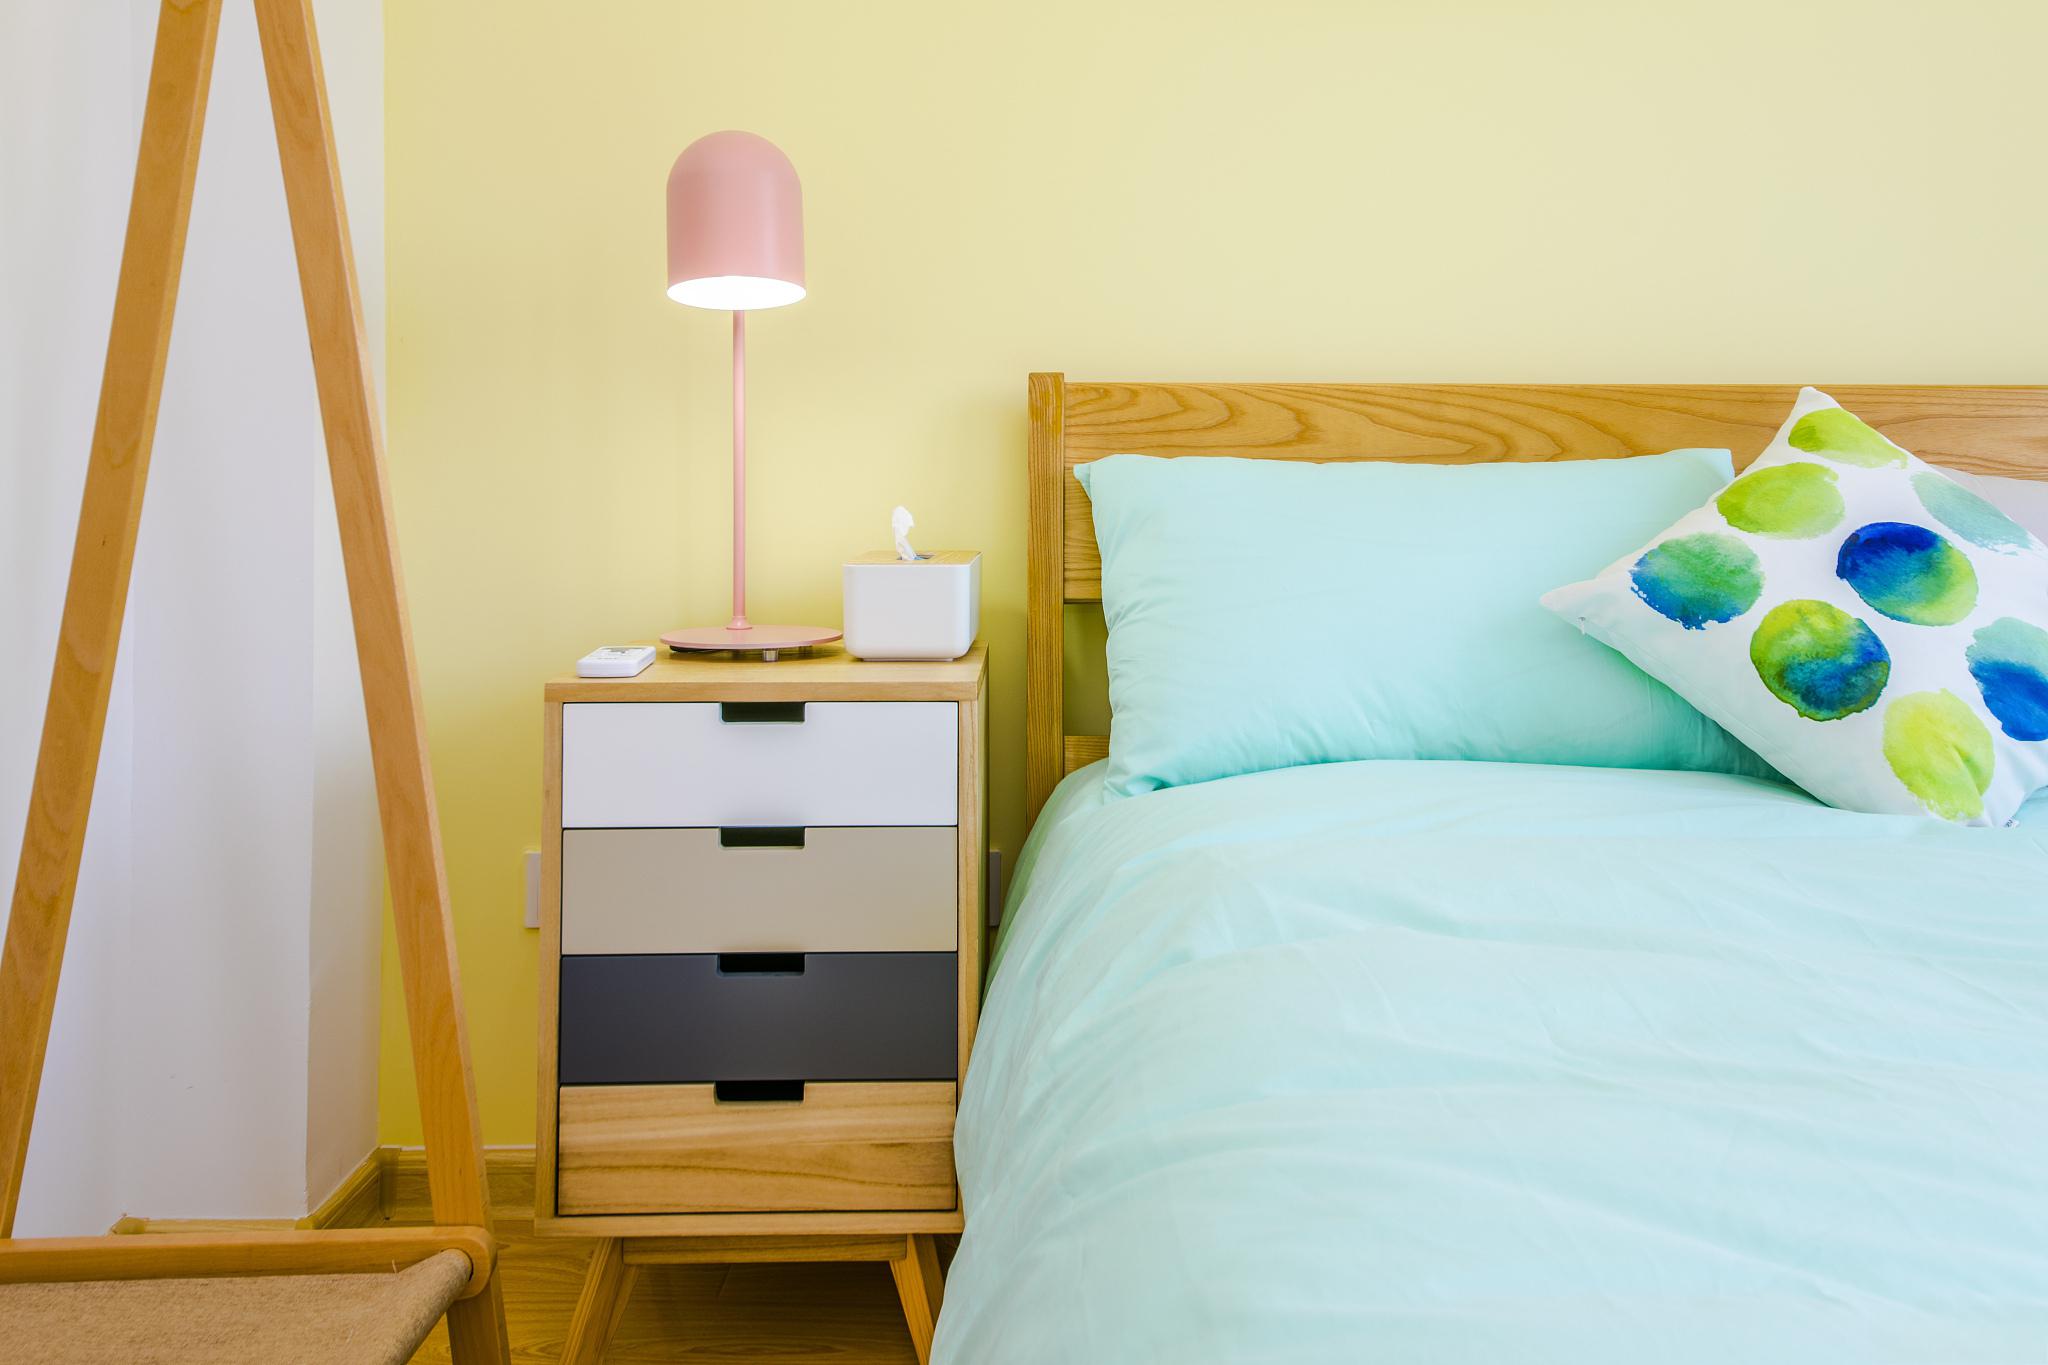 小卧室装修攻略 你是否曾经想过如何将不到10平米的小卧室装修得既